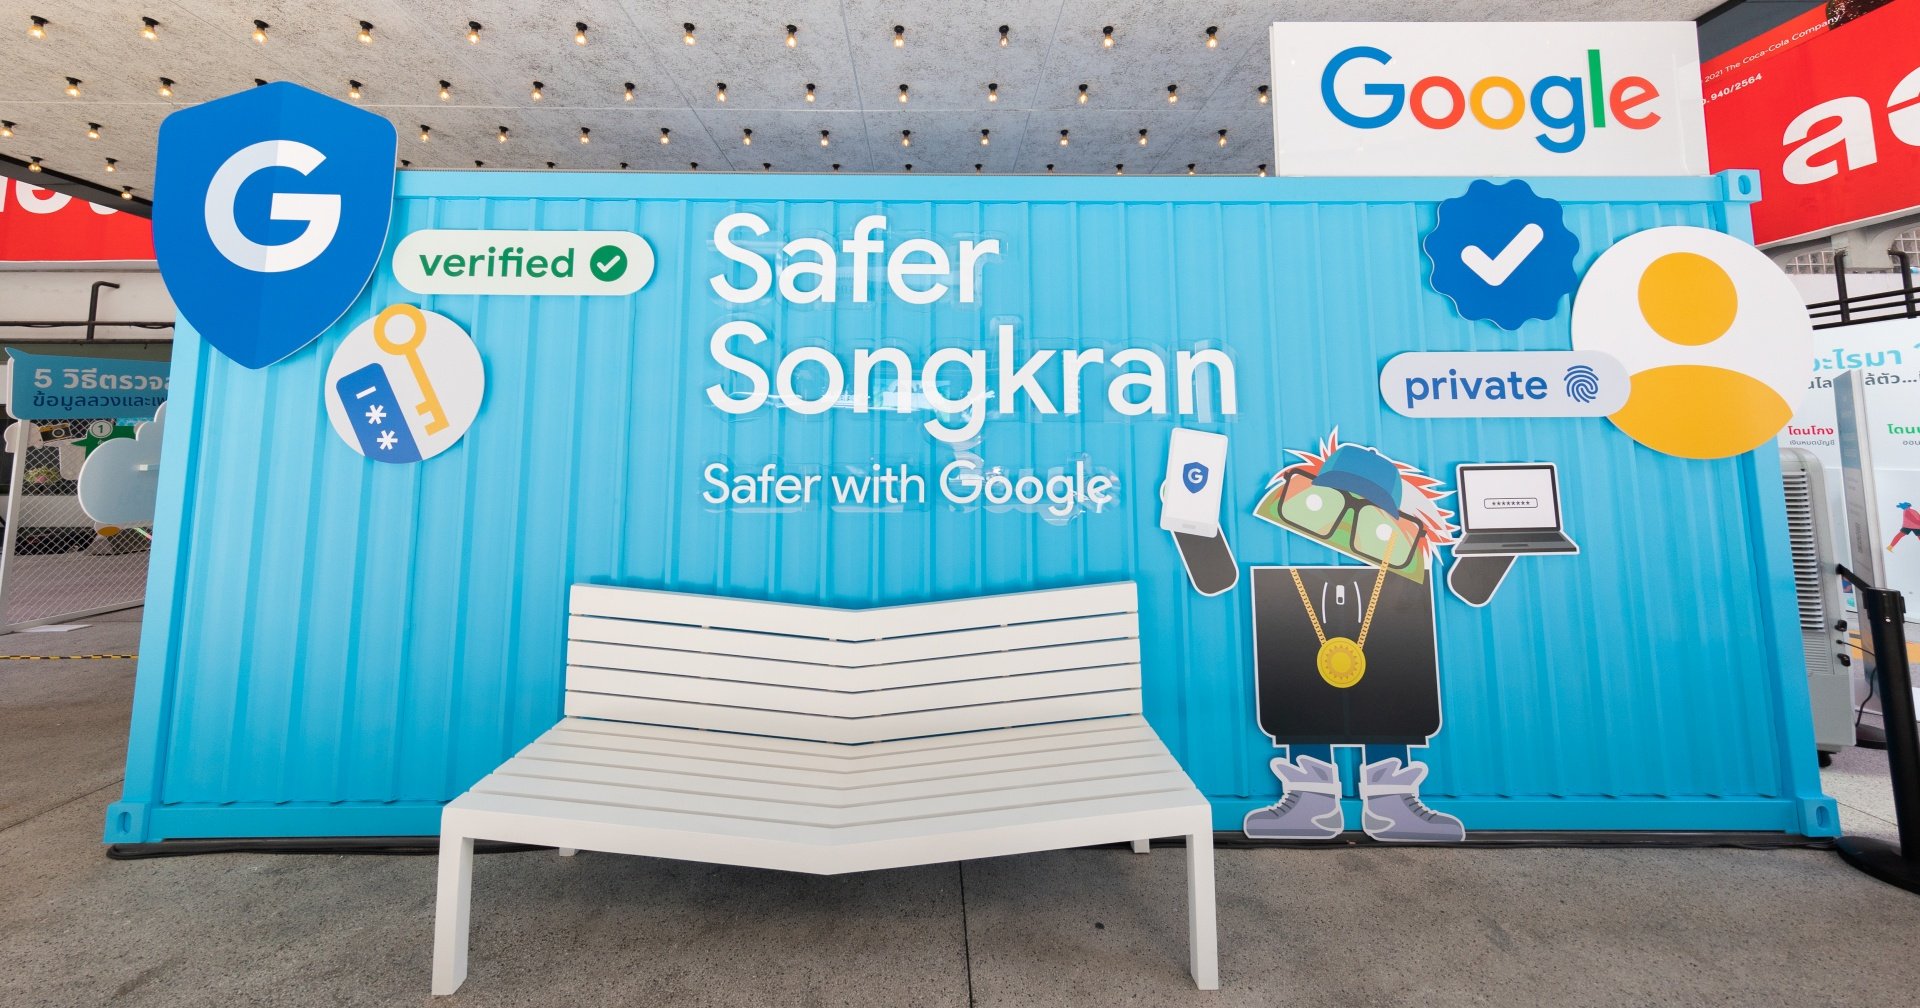 Google จัดงาน Safer Songkran รู้ทันกลลวงออนไลน์  พร้อมอัปเดตฟีเจอร์เช็กความน่าเชื่อถือของเว็บไซต์ รับสงกรานต์นี้